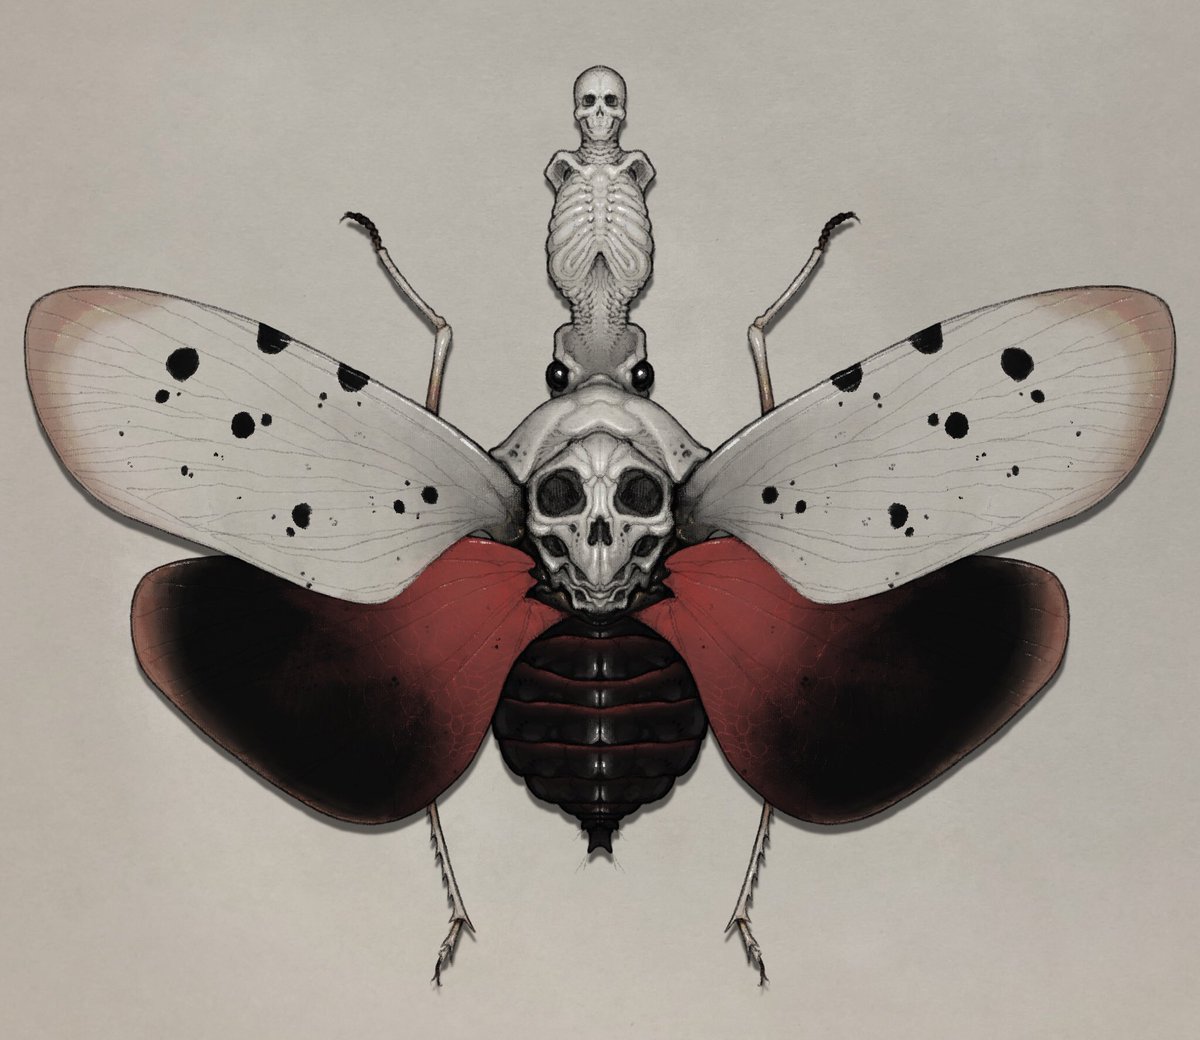 「不思議な虫たち 」|nao70sharkのイラスト